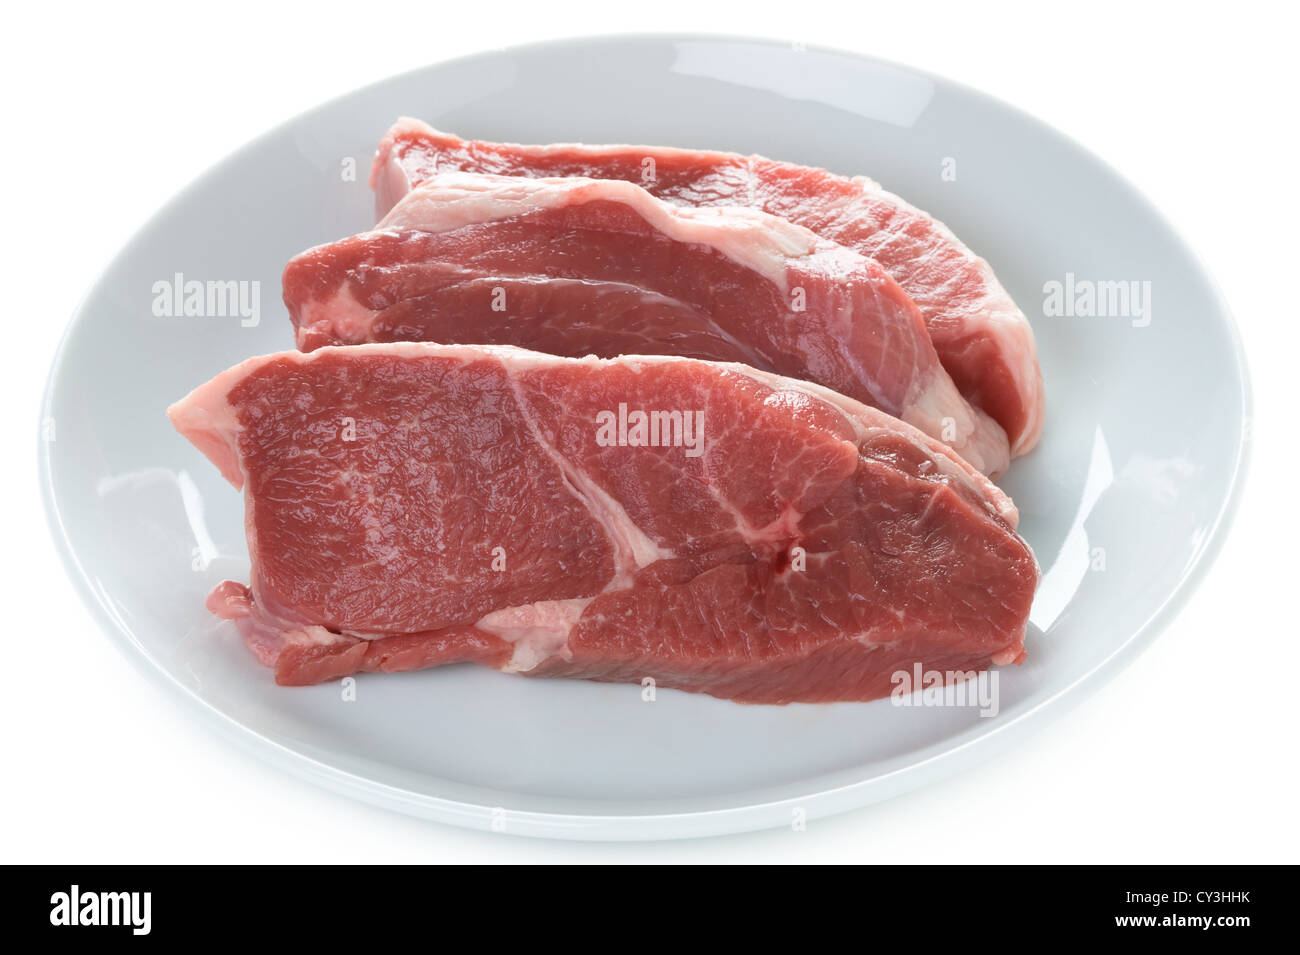 Raw gamba Di agnello bistecche di carne cruda su una piastra isolata su uno sfondo bianco Foto Stock